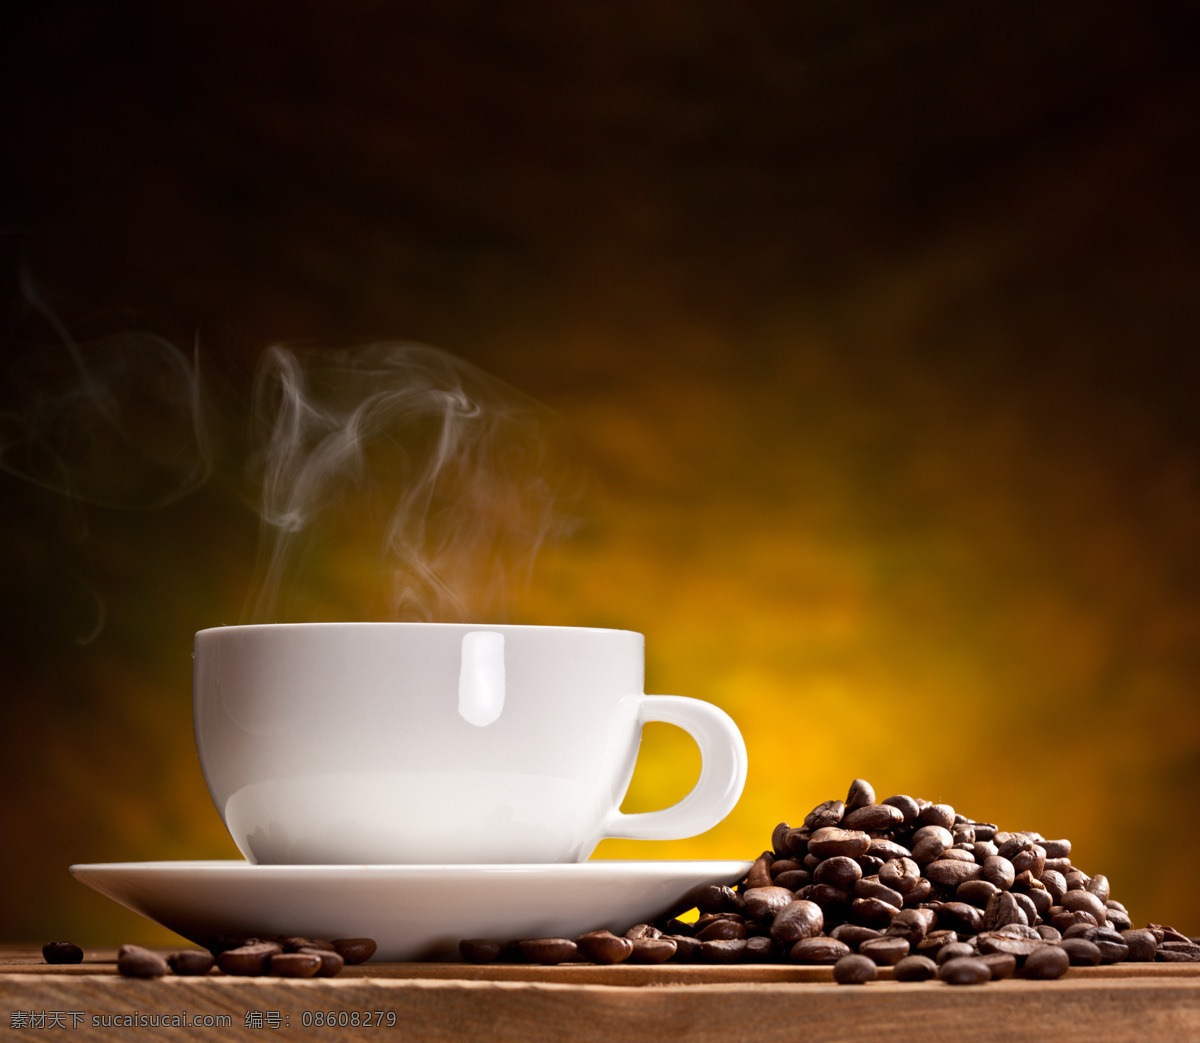 洁白 咖啡杯 咖啡豆 洁白咖啡杯 杯子 杯具 热气 咖啡图片 餐饮美食